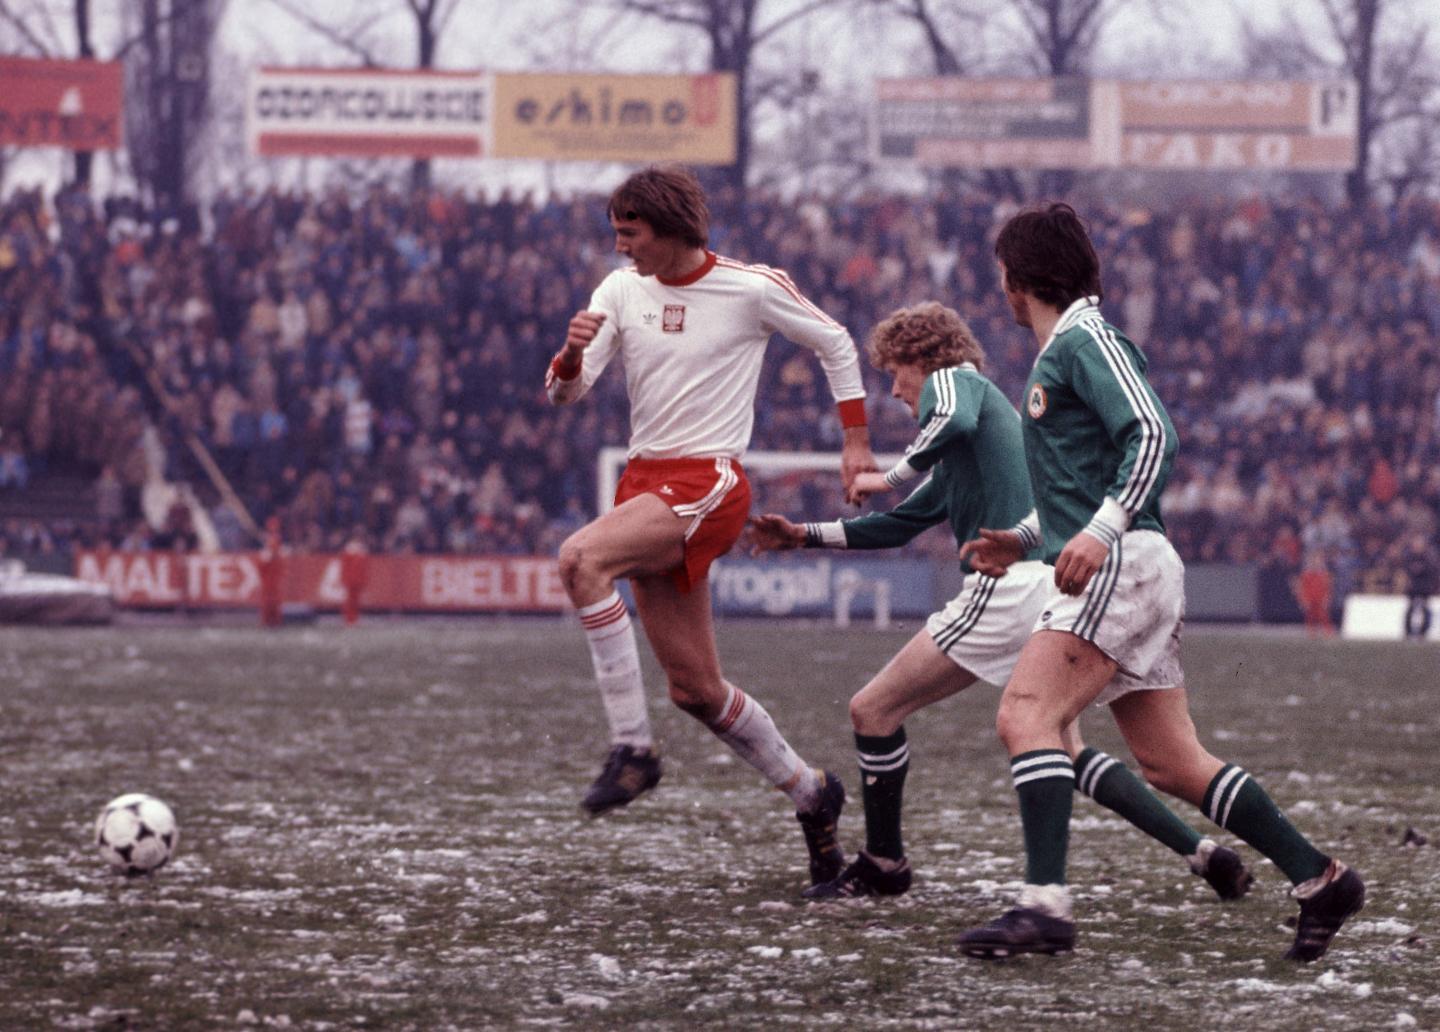 Roman Wójcicki zadebiutował w reprezentacji Polski meczem z Irlandią w Łodzi 12 kwietnia 1978 roku.